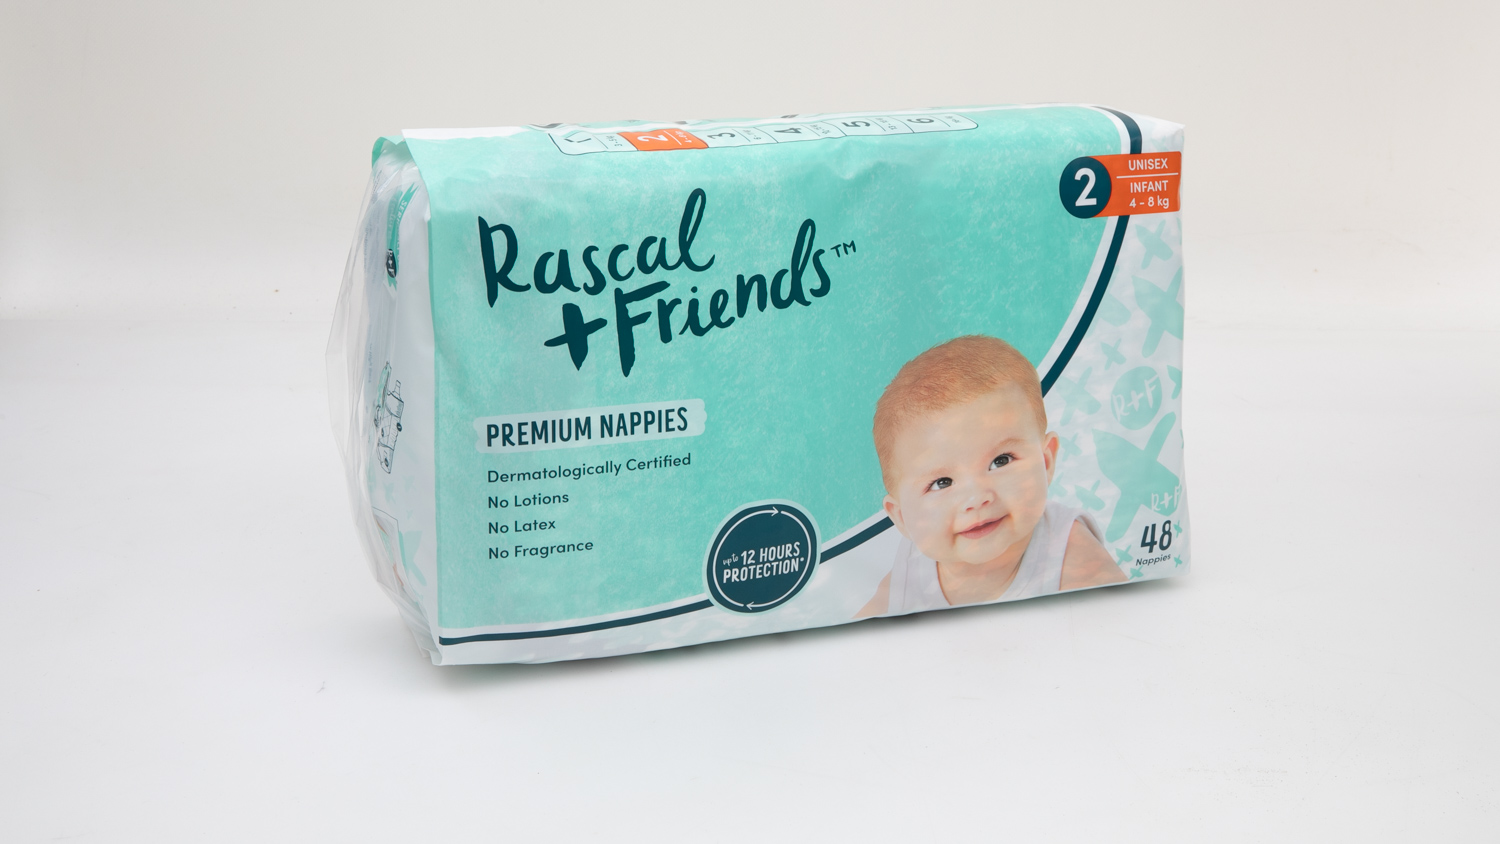 Rascal + Friends Premium Nappies Unisex Infant Size 2 Review